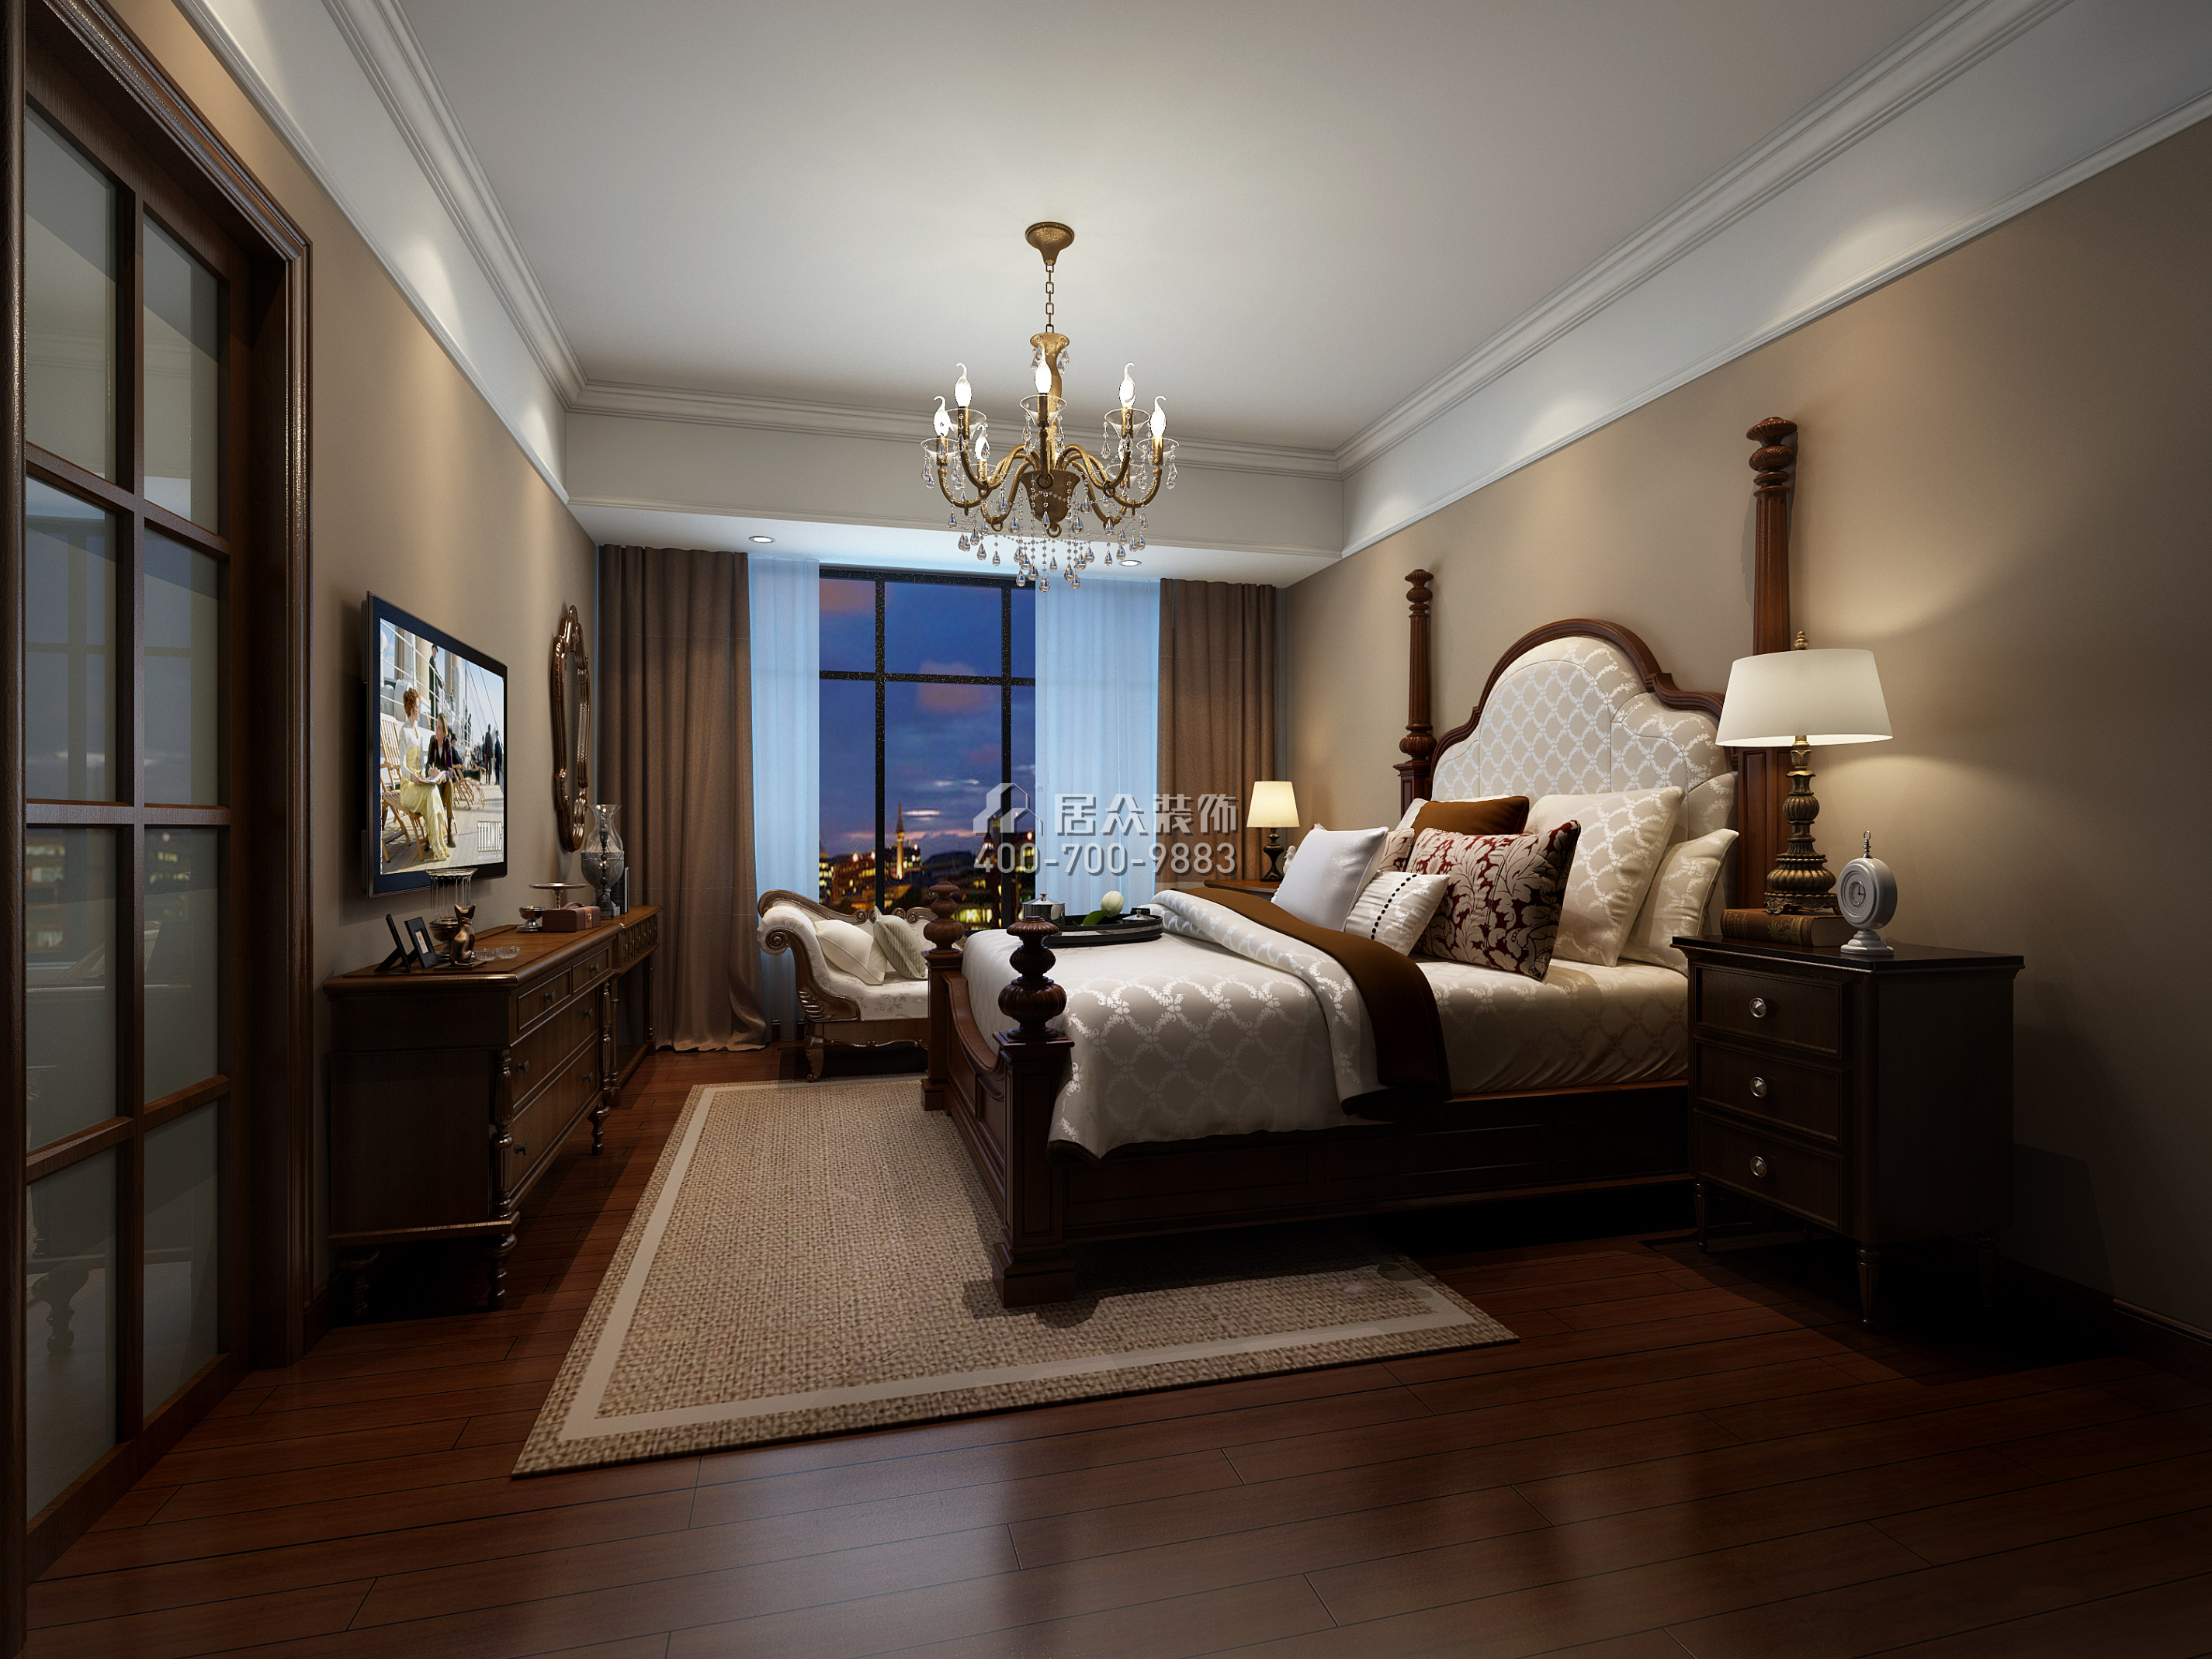 中洲中央公园二期270平方米现代简约风格平层户型卧室装修效果图